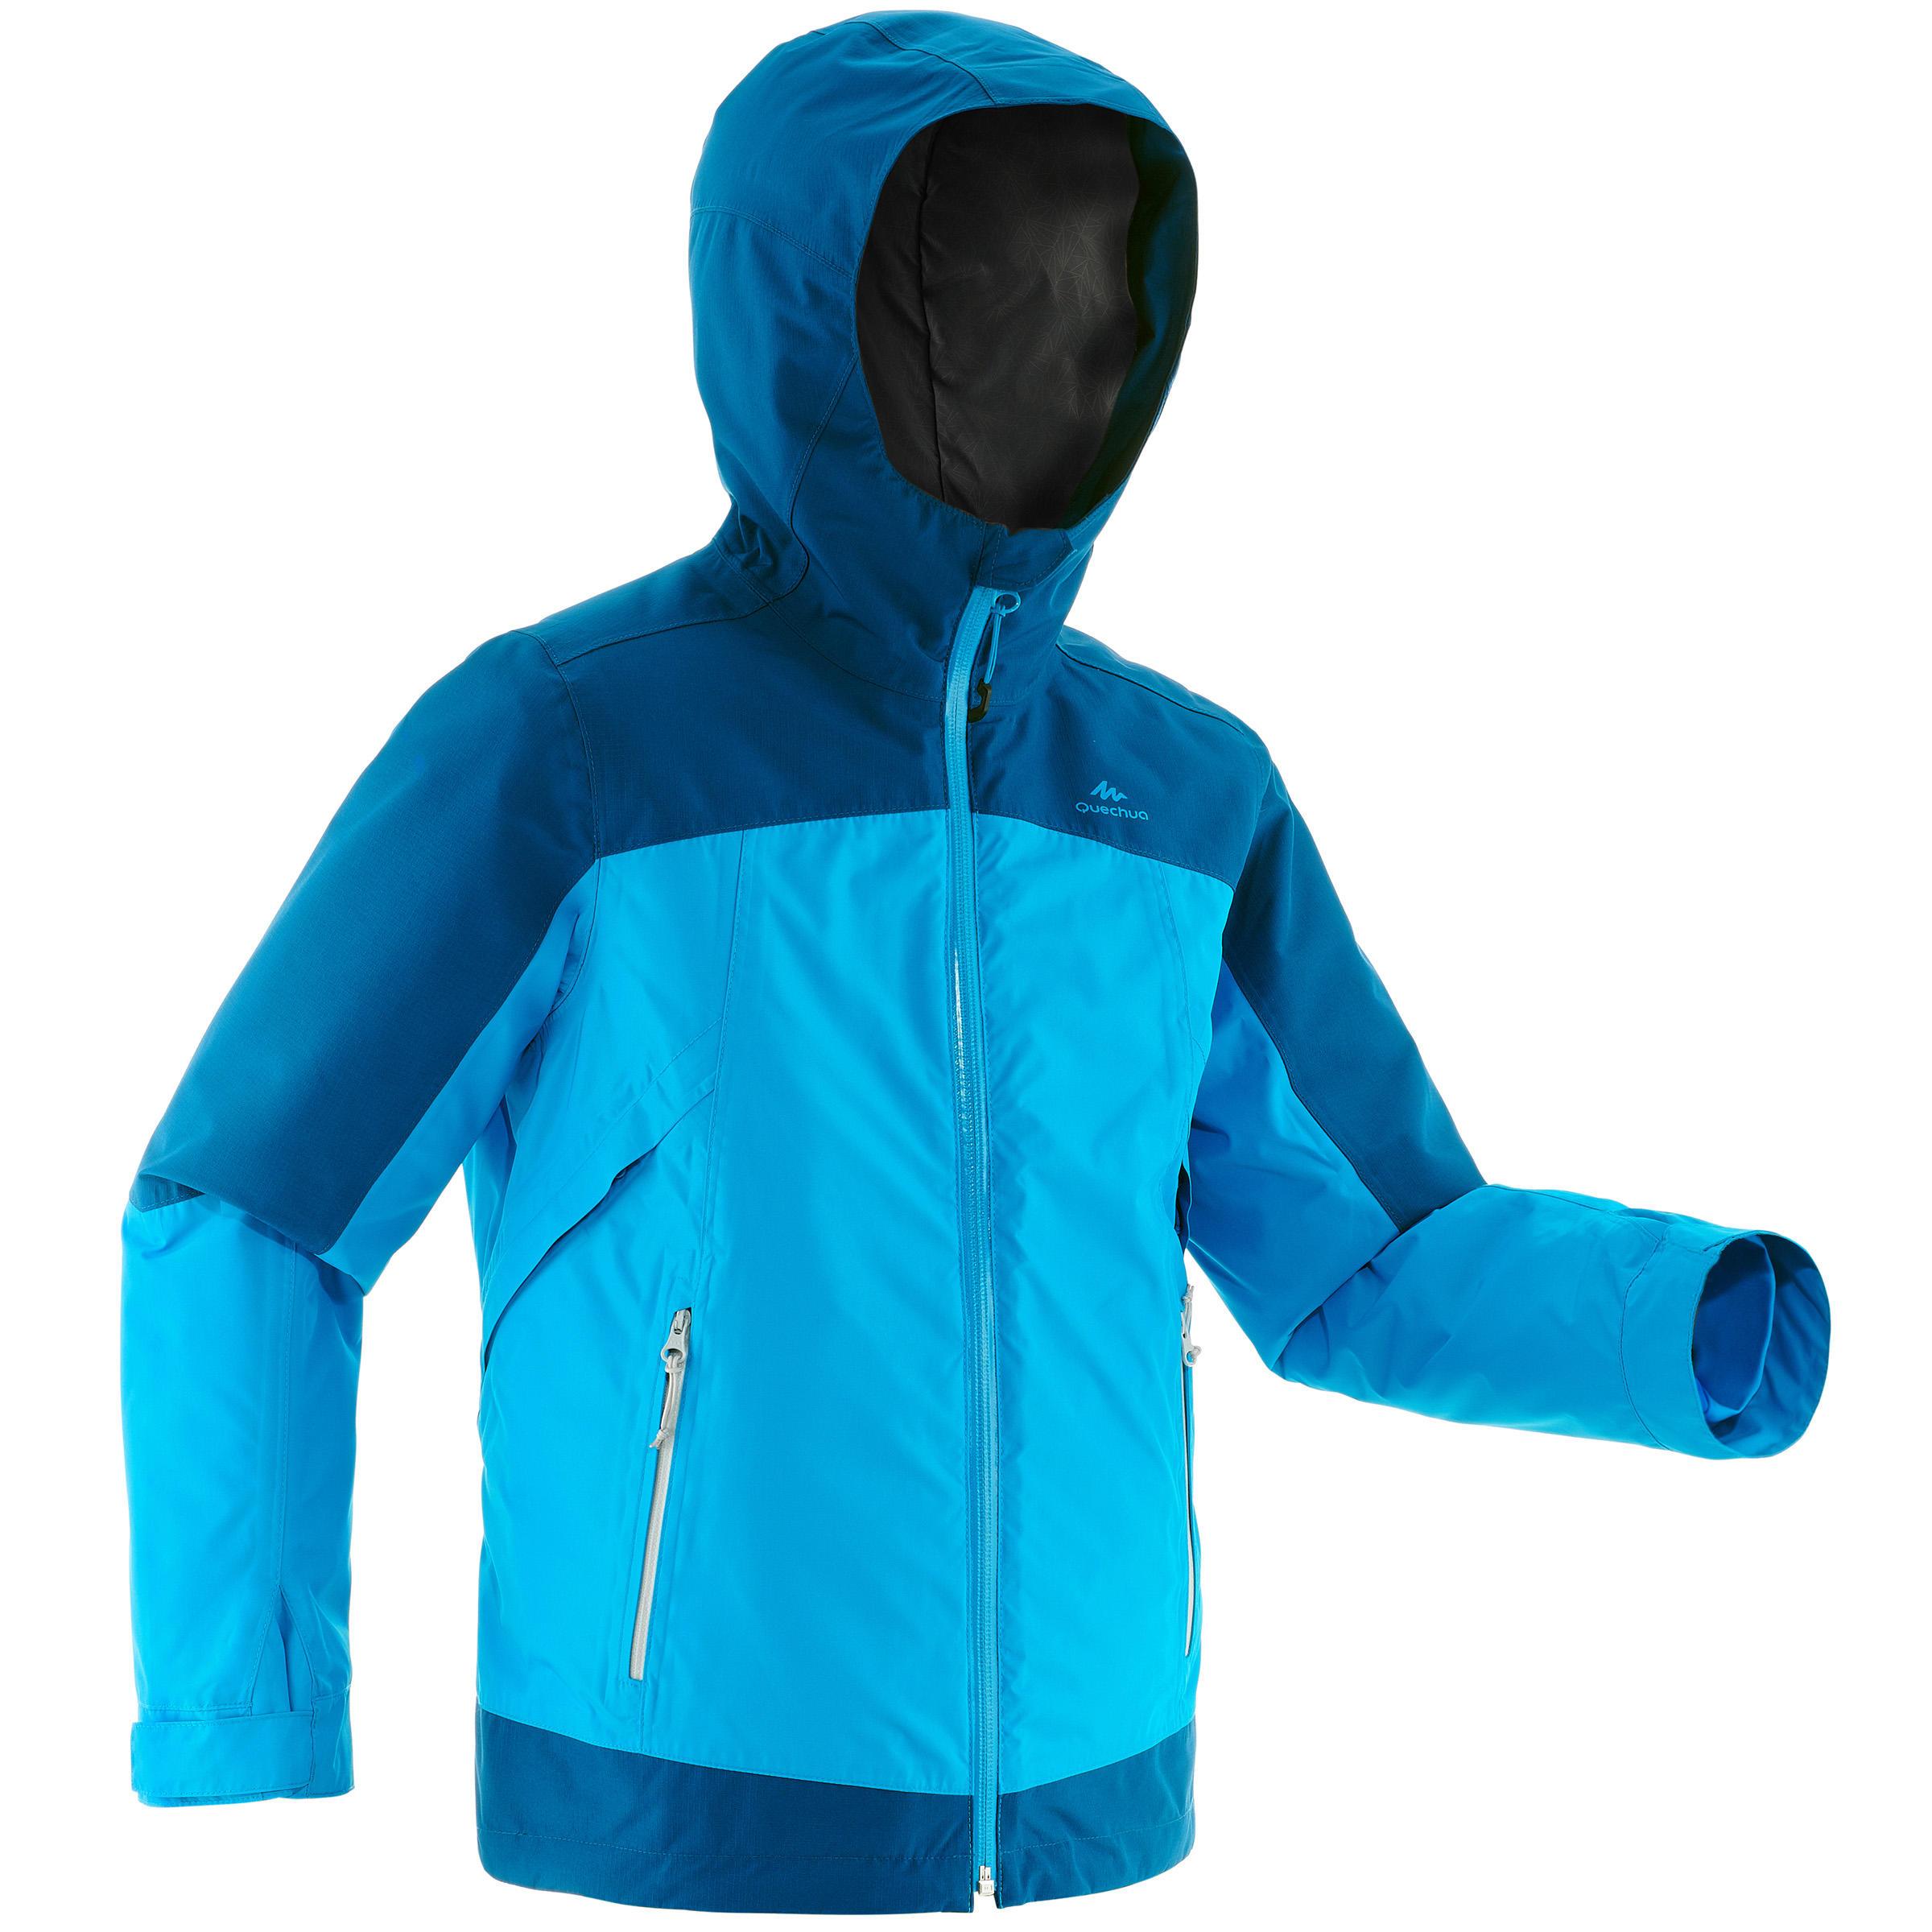 [ด่วน!! โปรโมชั่นมีจำนวนจำกัด] เสื้อแจ็คเก็ตเด็ก 3-IN-1 สำหรับใส่เดินป่าลุยหิมะรุ่น SH500 X-WARM (สีฟ้า) สำหรับ เดินป่า